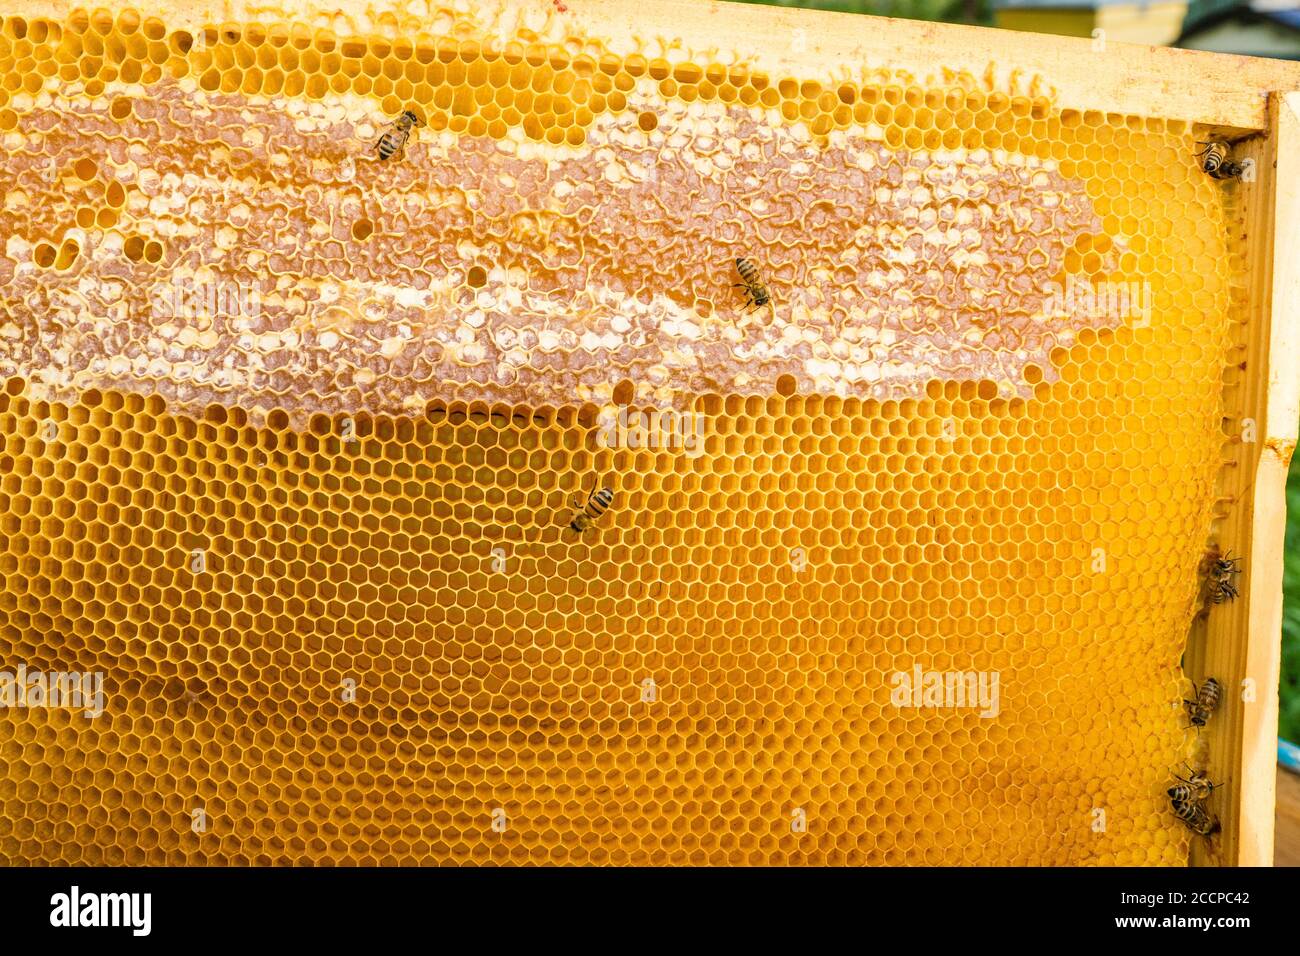 Imker hält Rahmen der Wabe mit Bienen. Bienen Bienen Bienen Bienen Bienen Bienen Bienen. Leben der Bienen. Arbeiterbienen. Die Bienen bringen Honig. Sommer. Imker Stockfoto